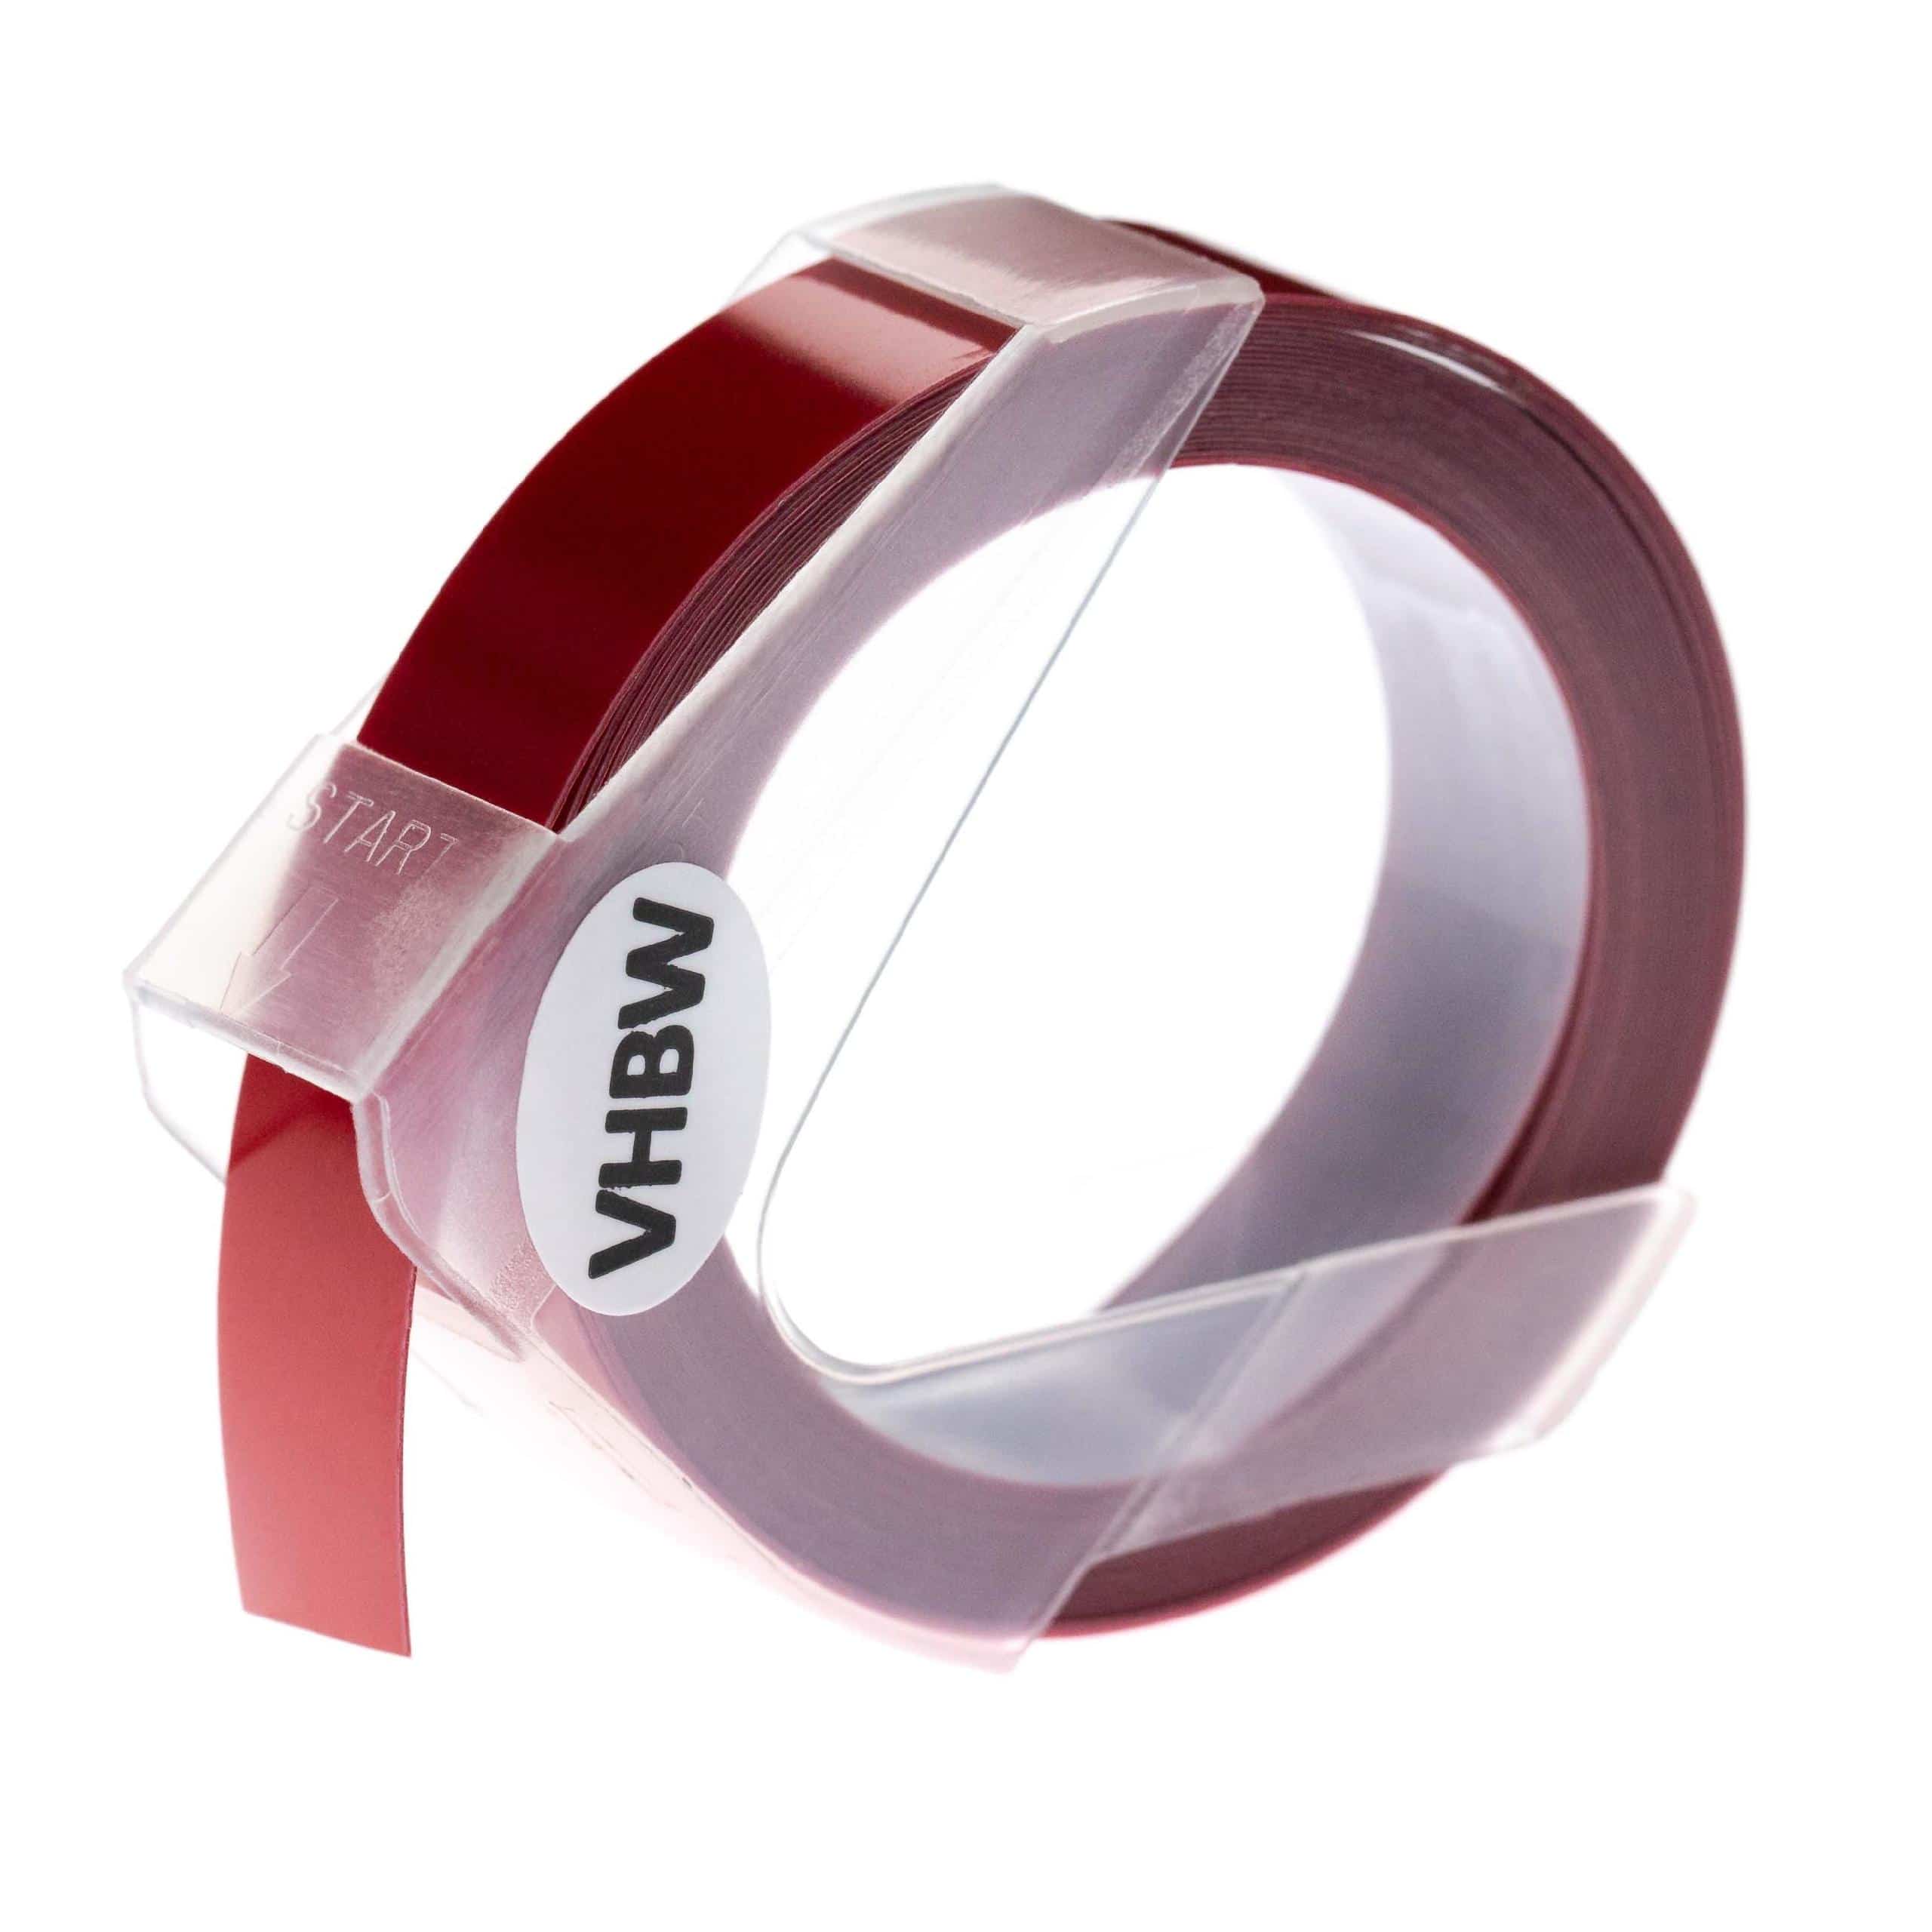 Casete cinta relieve 3D Casete cinta escritura reemplaza Dymo 0898152 Blanco su Rojo